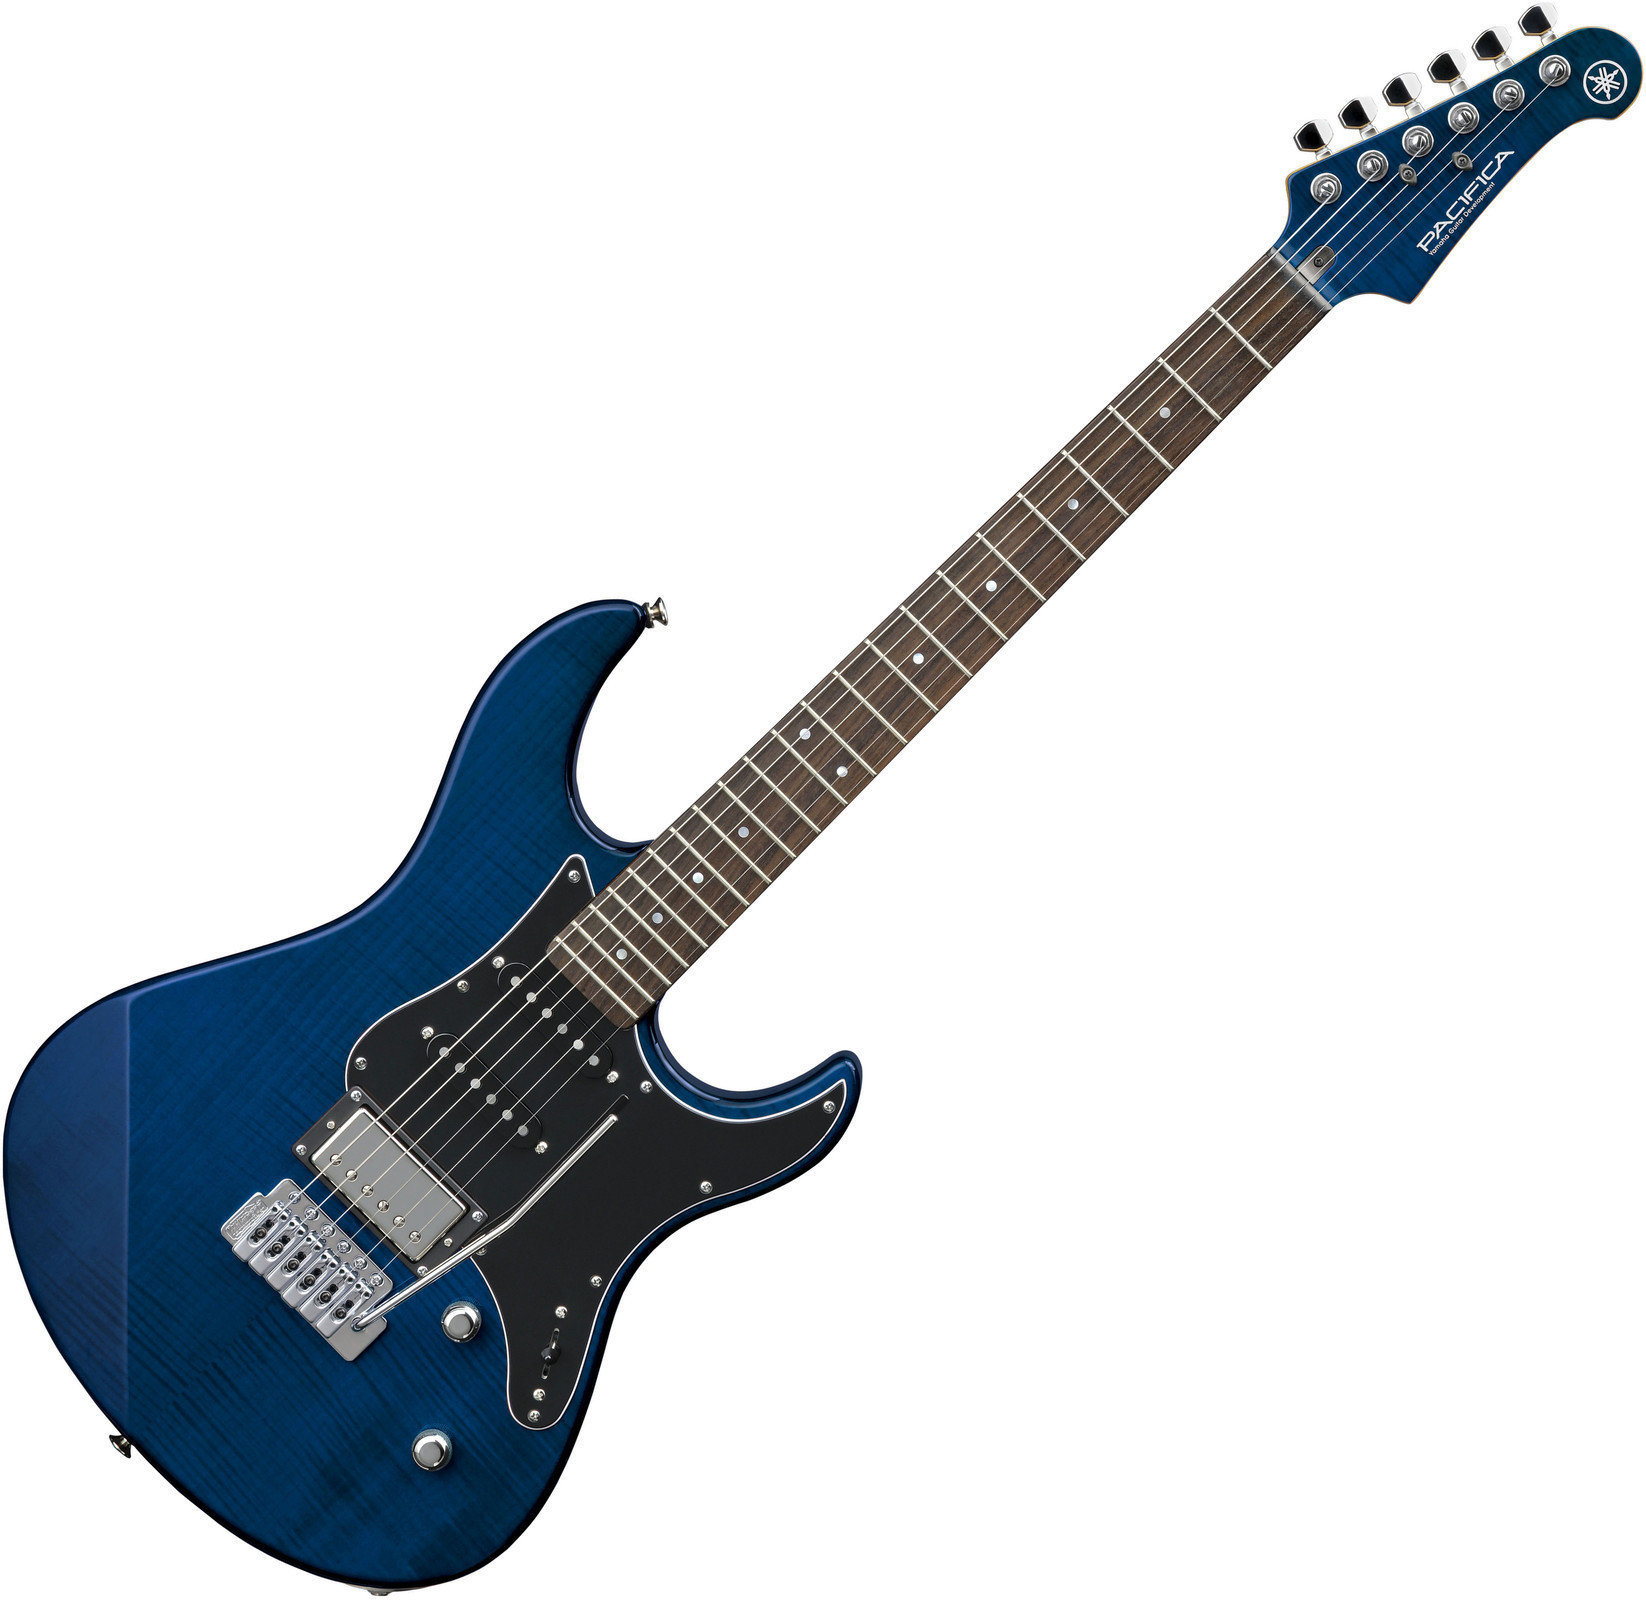 Elektrisk gitarr Yamaha Pacifica 612 V Flamed Maple Translucent BL